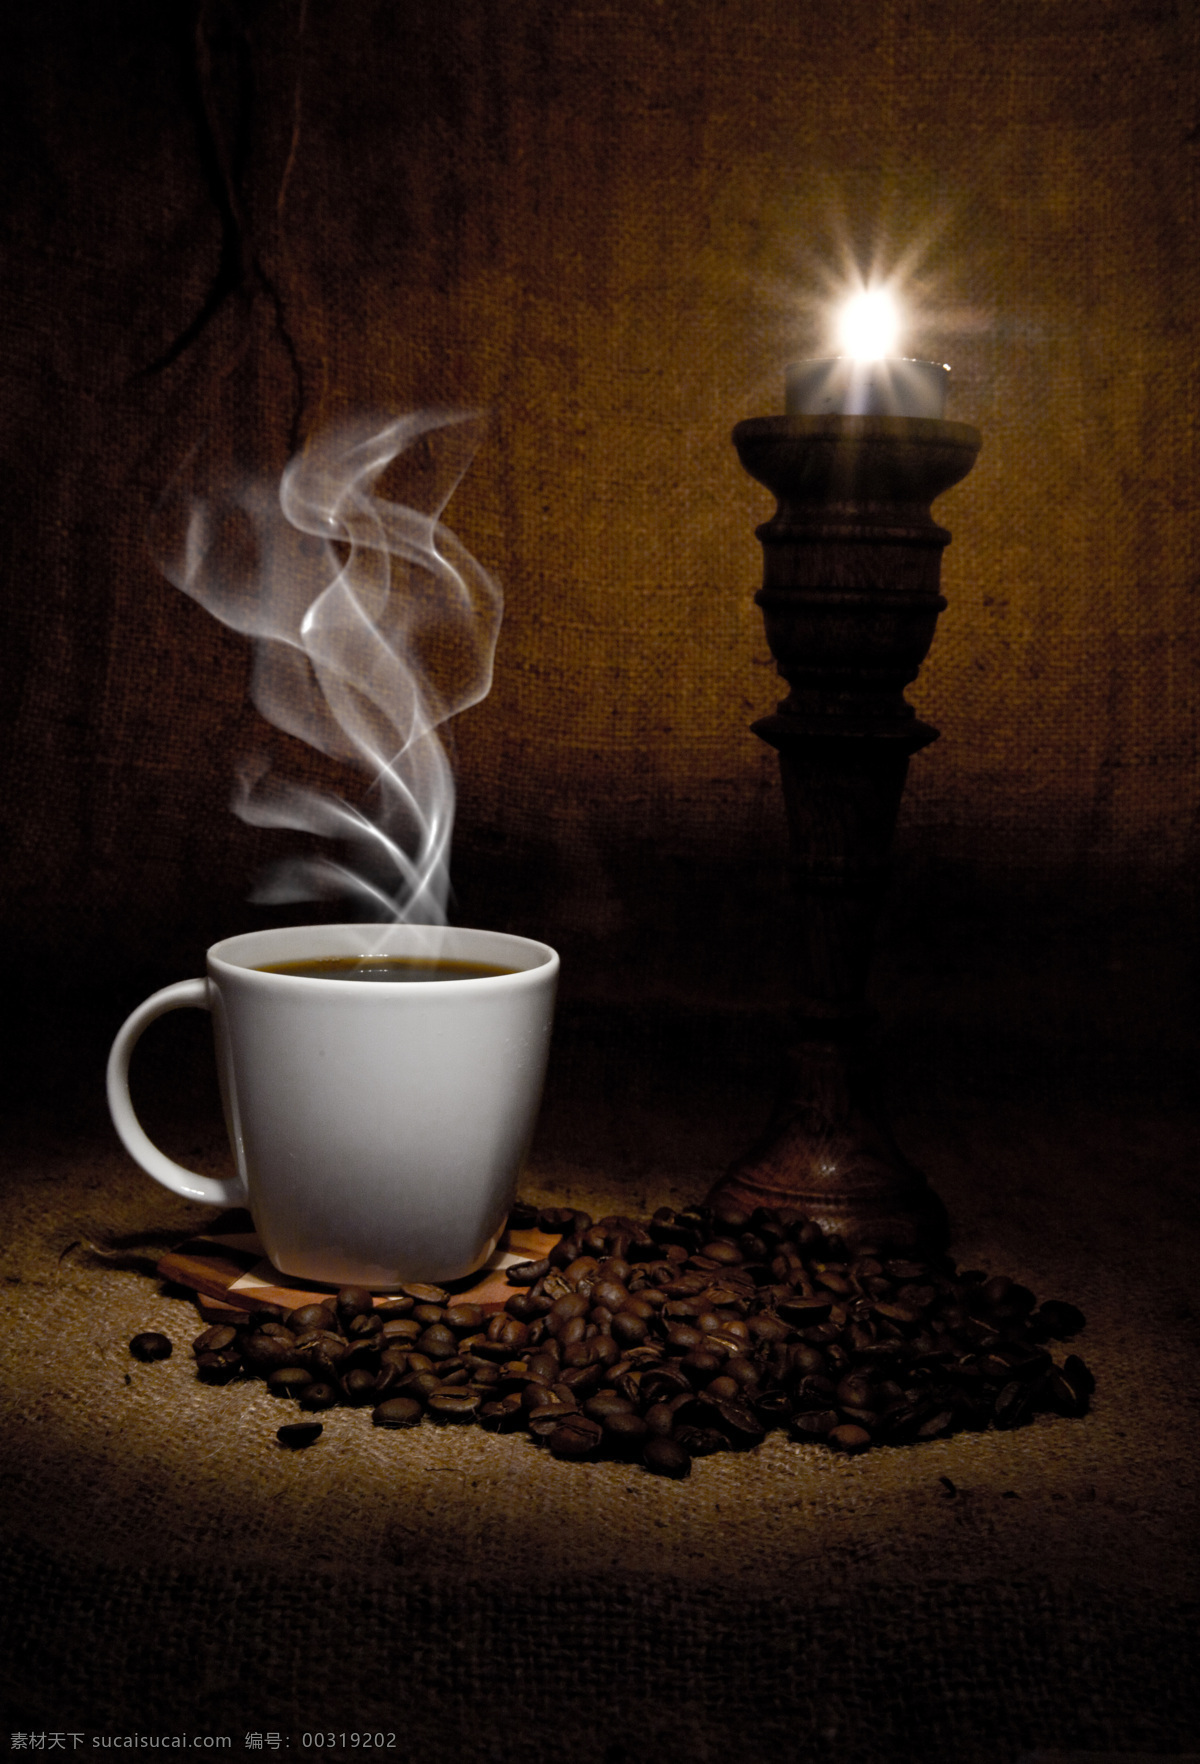 热 咖啡 咖啡豆 特写 咖啡杯 热咖啡 杯子 灯 复古 温馨 休闲 品味 享受生活 高档 摄影图 高清图片 咖啡图片 餐饮美食